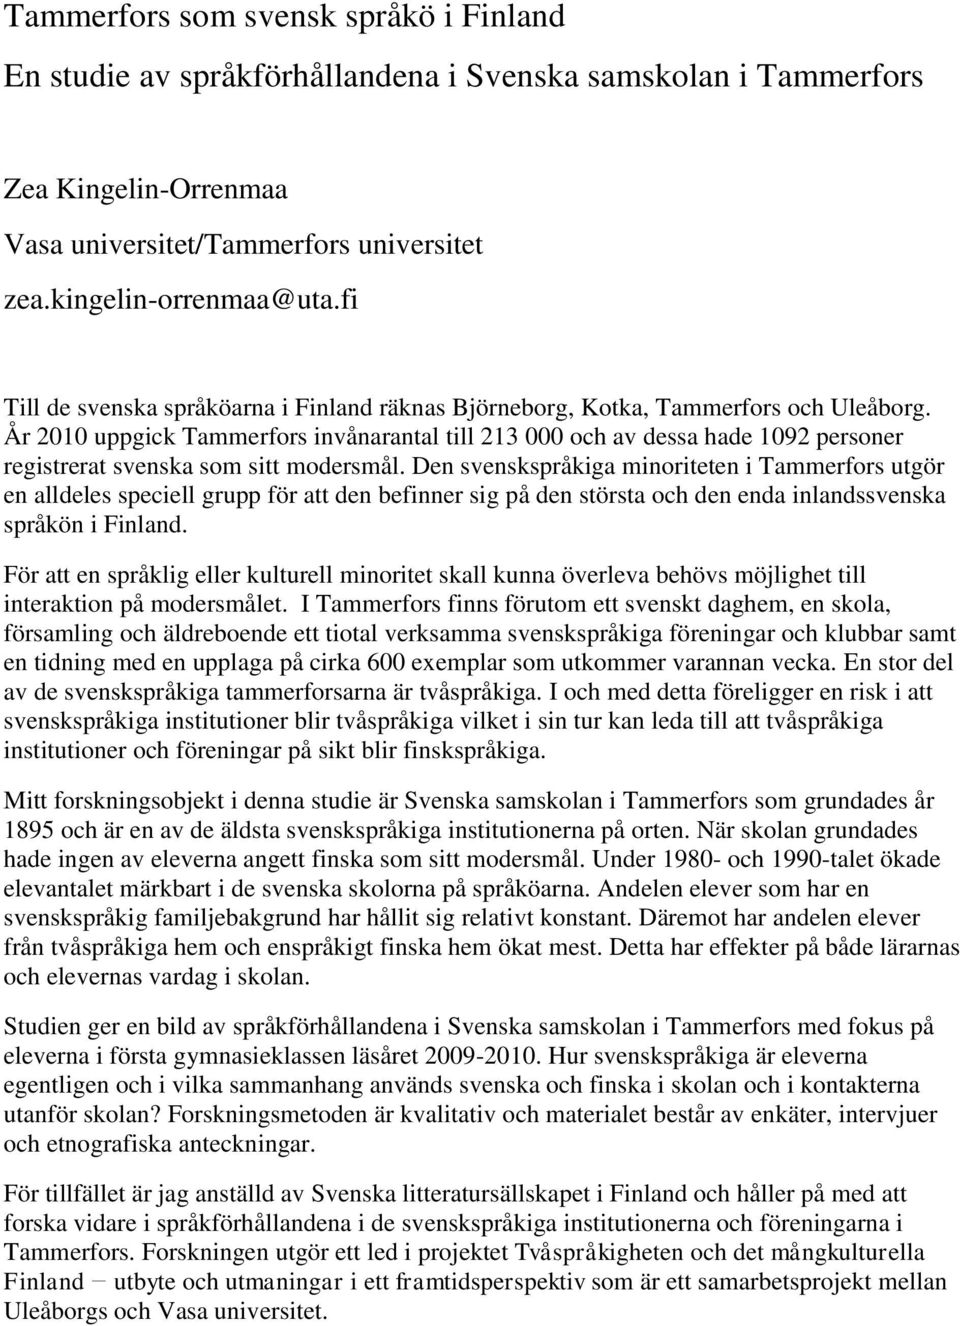 År 2010 uppgick Tammerfors invånarantal till 213 000 och av dessa hade 1092 personer registrerat svenska som sitt modersmål.